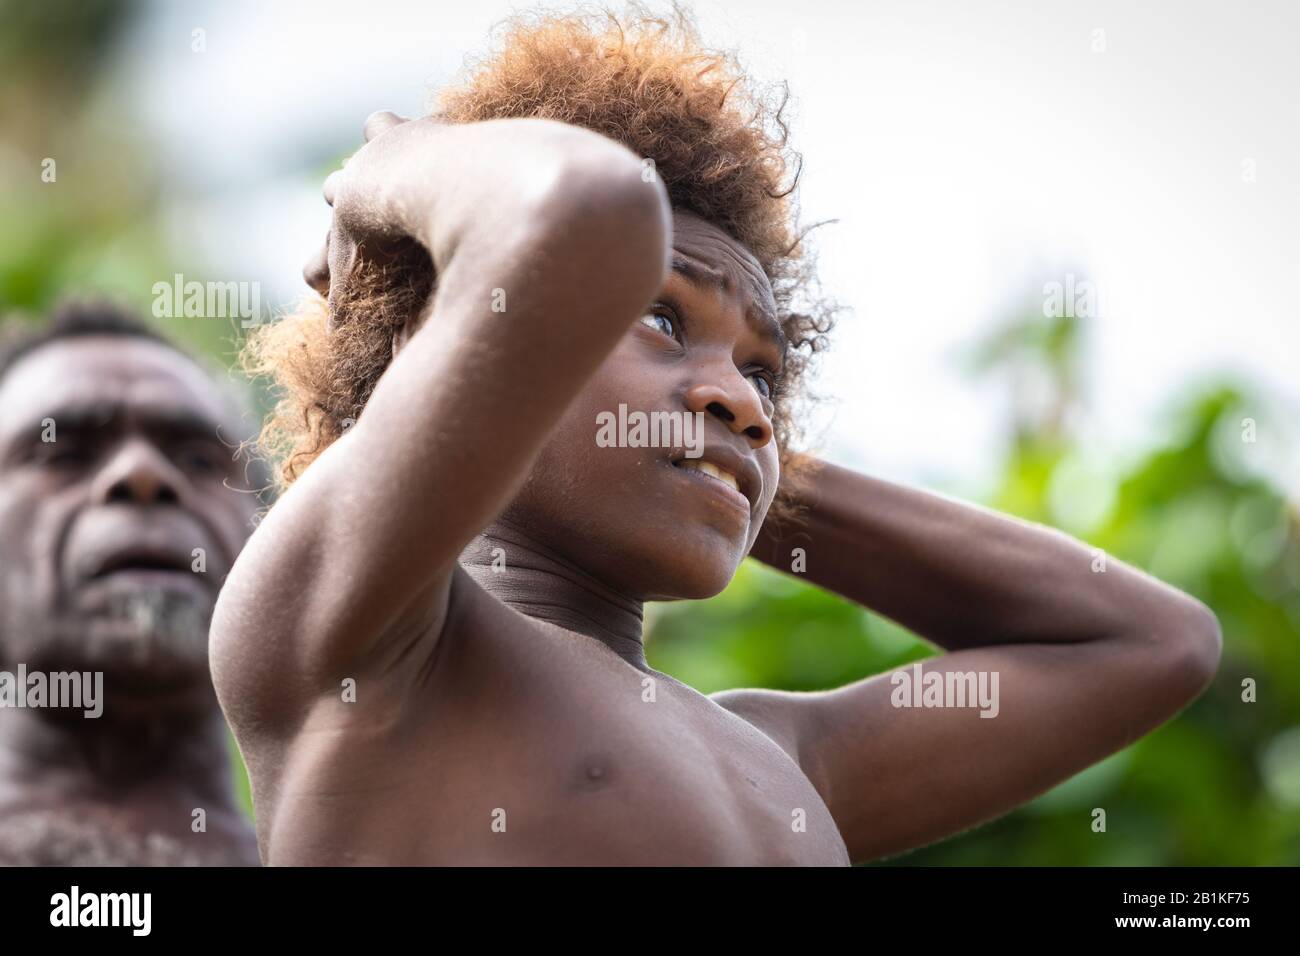 Île de la Pentecôte Vanuatu, Pacifique Sud, Océanie : Portrait de garçon mélanésien à la recherche de sourire Banque D'Images